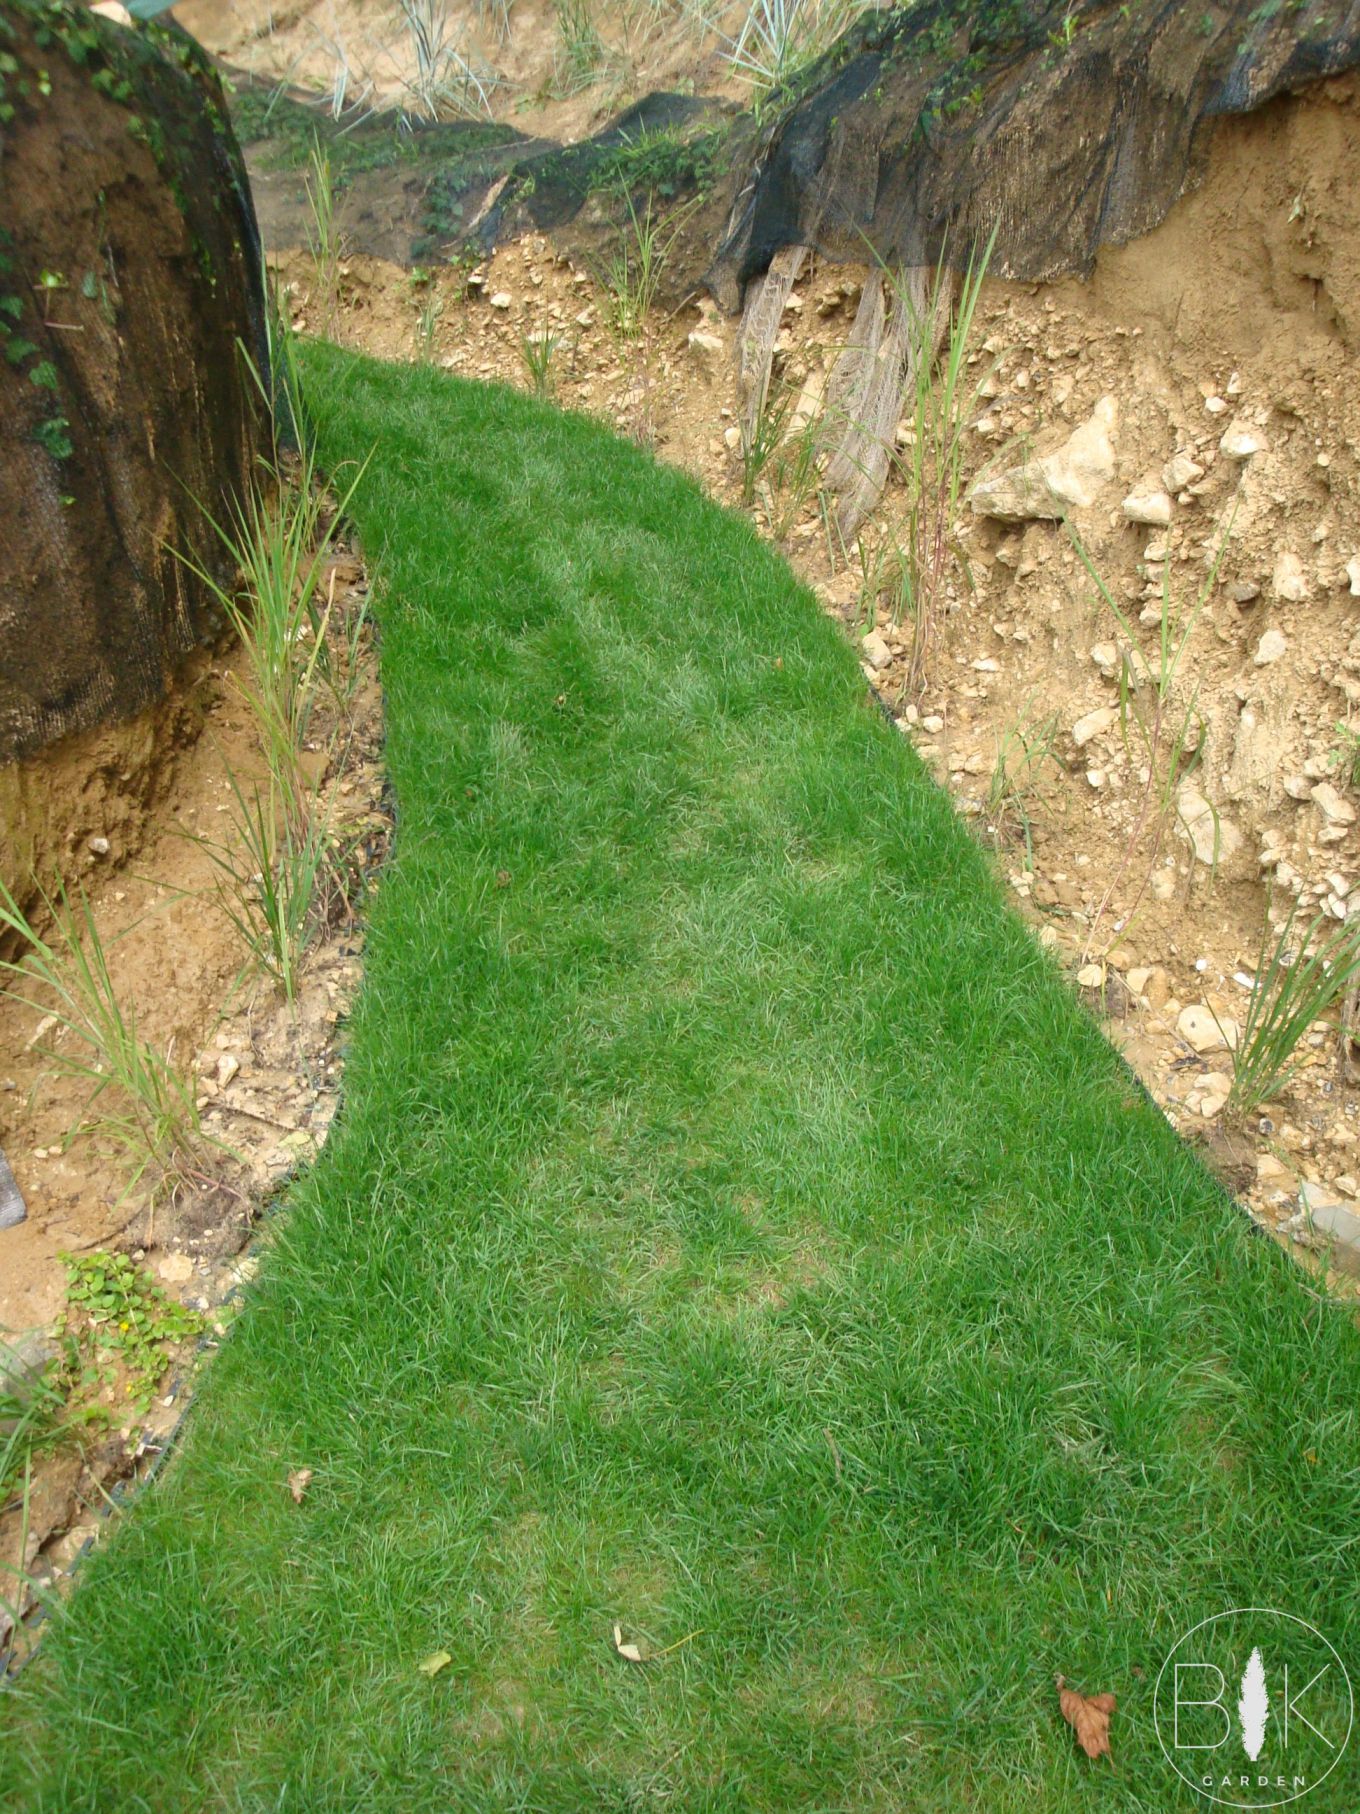 Trawnik z rolki